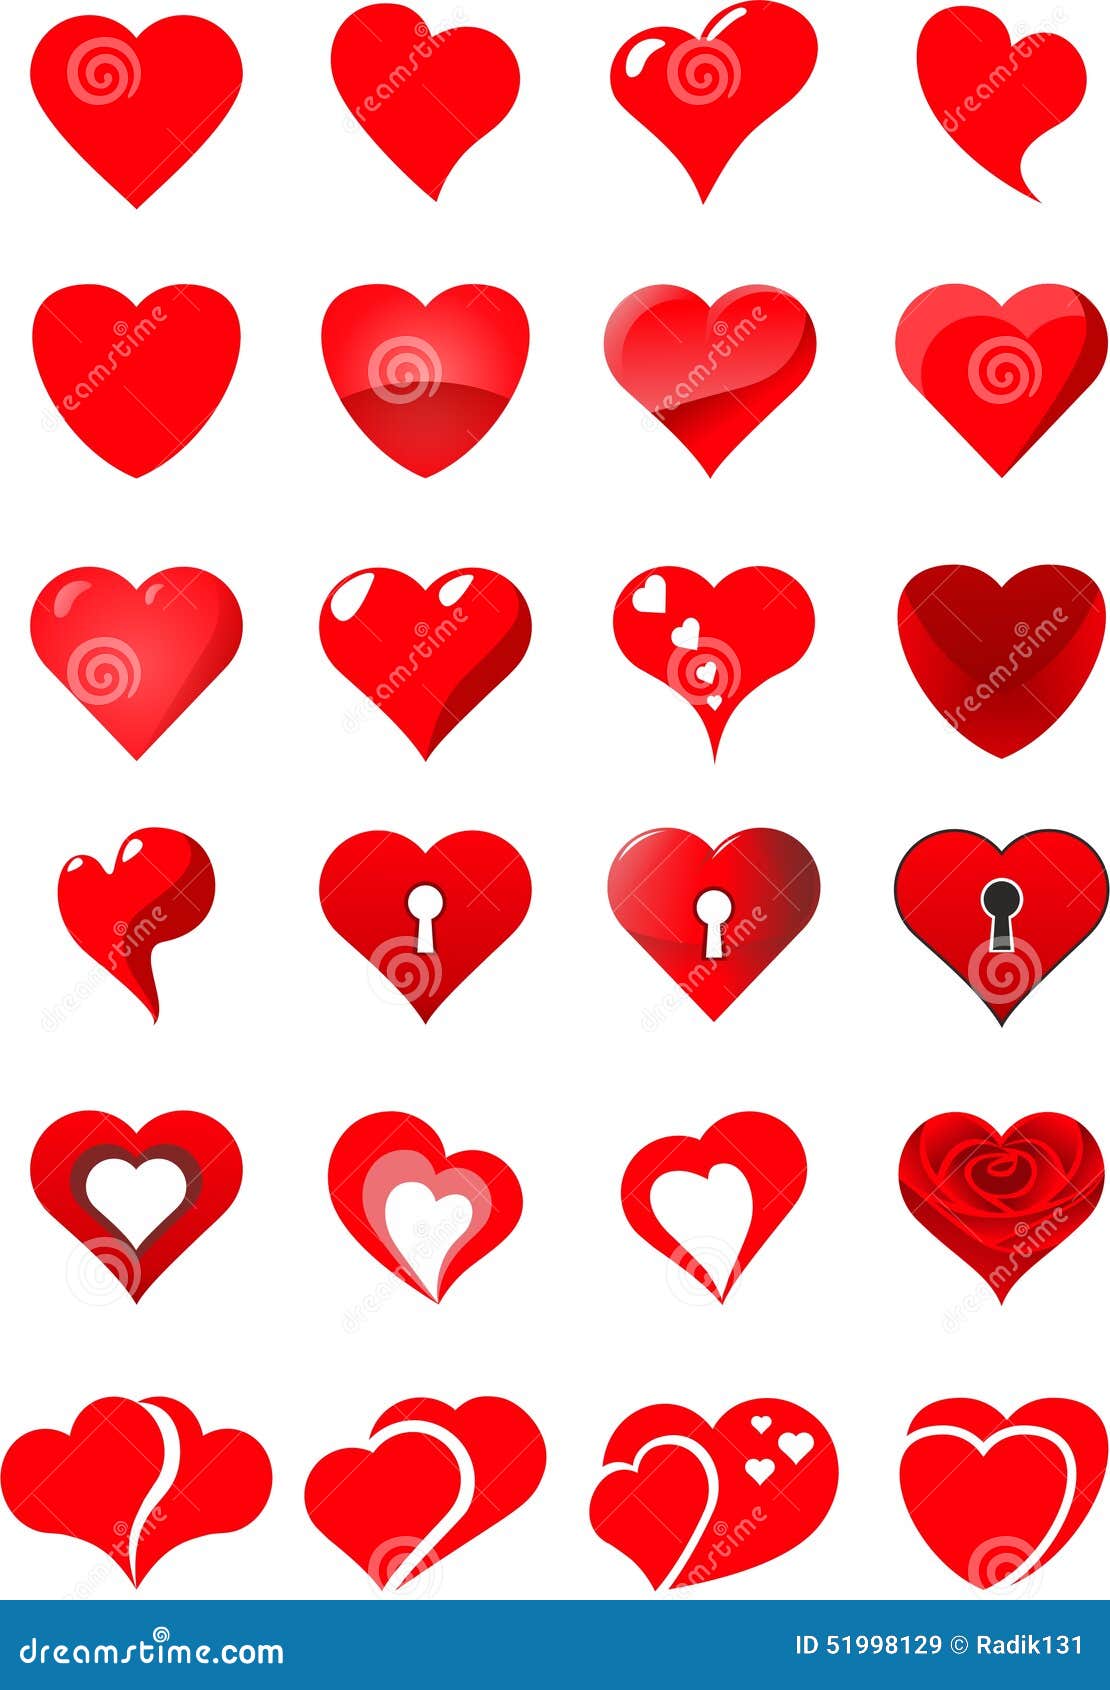 Lifebuoy. Изображения сердец, логотипов сердец, различных конфигураций сердец, тема влюбленности,